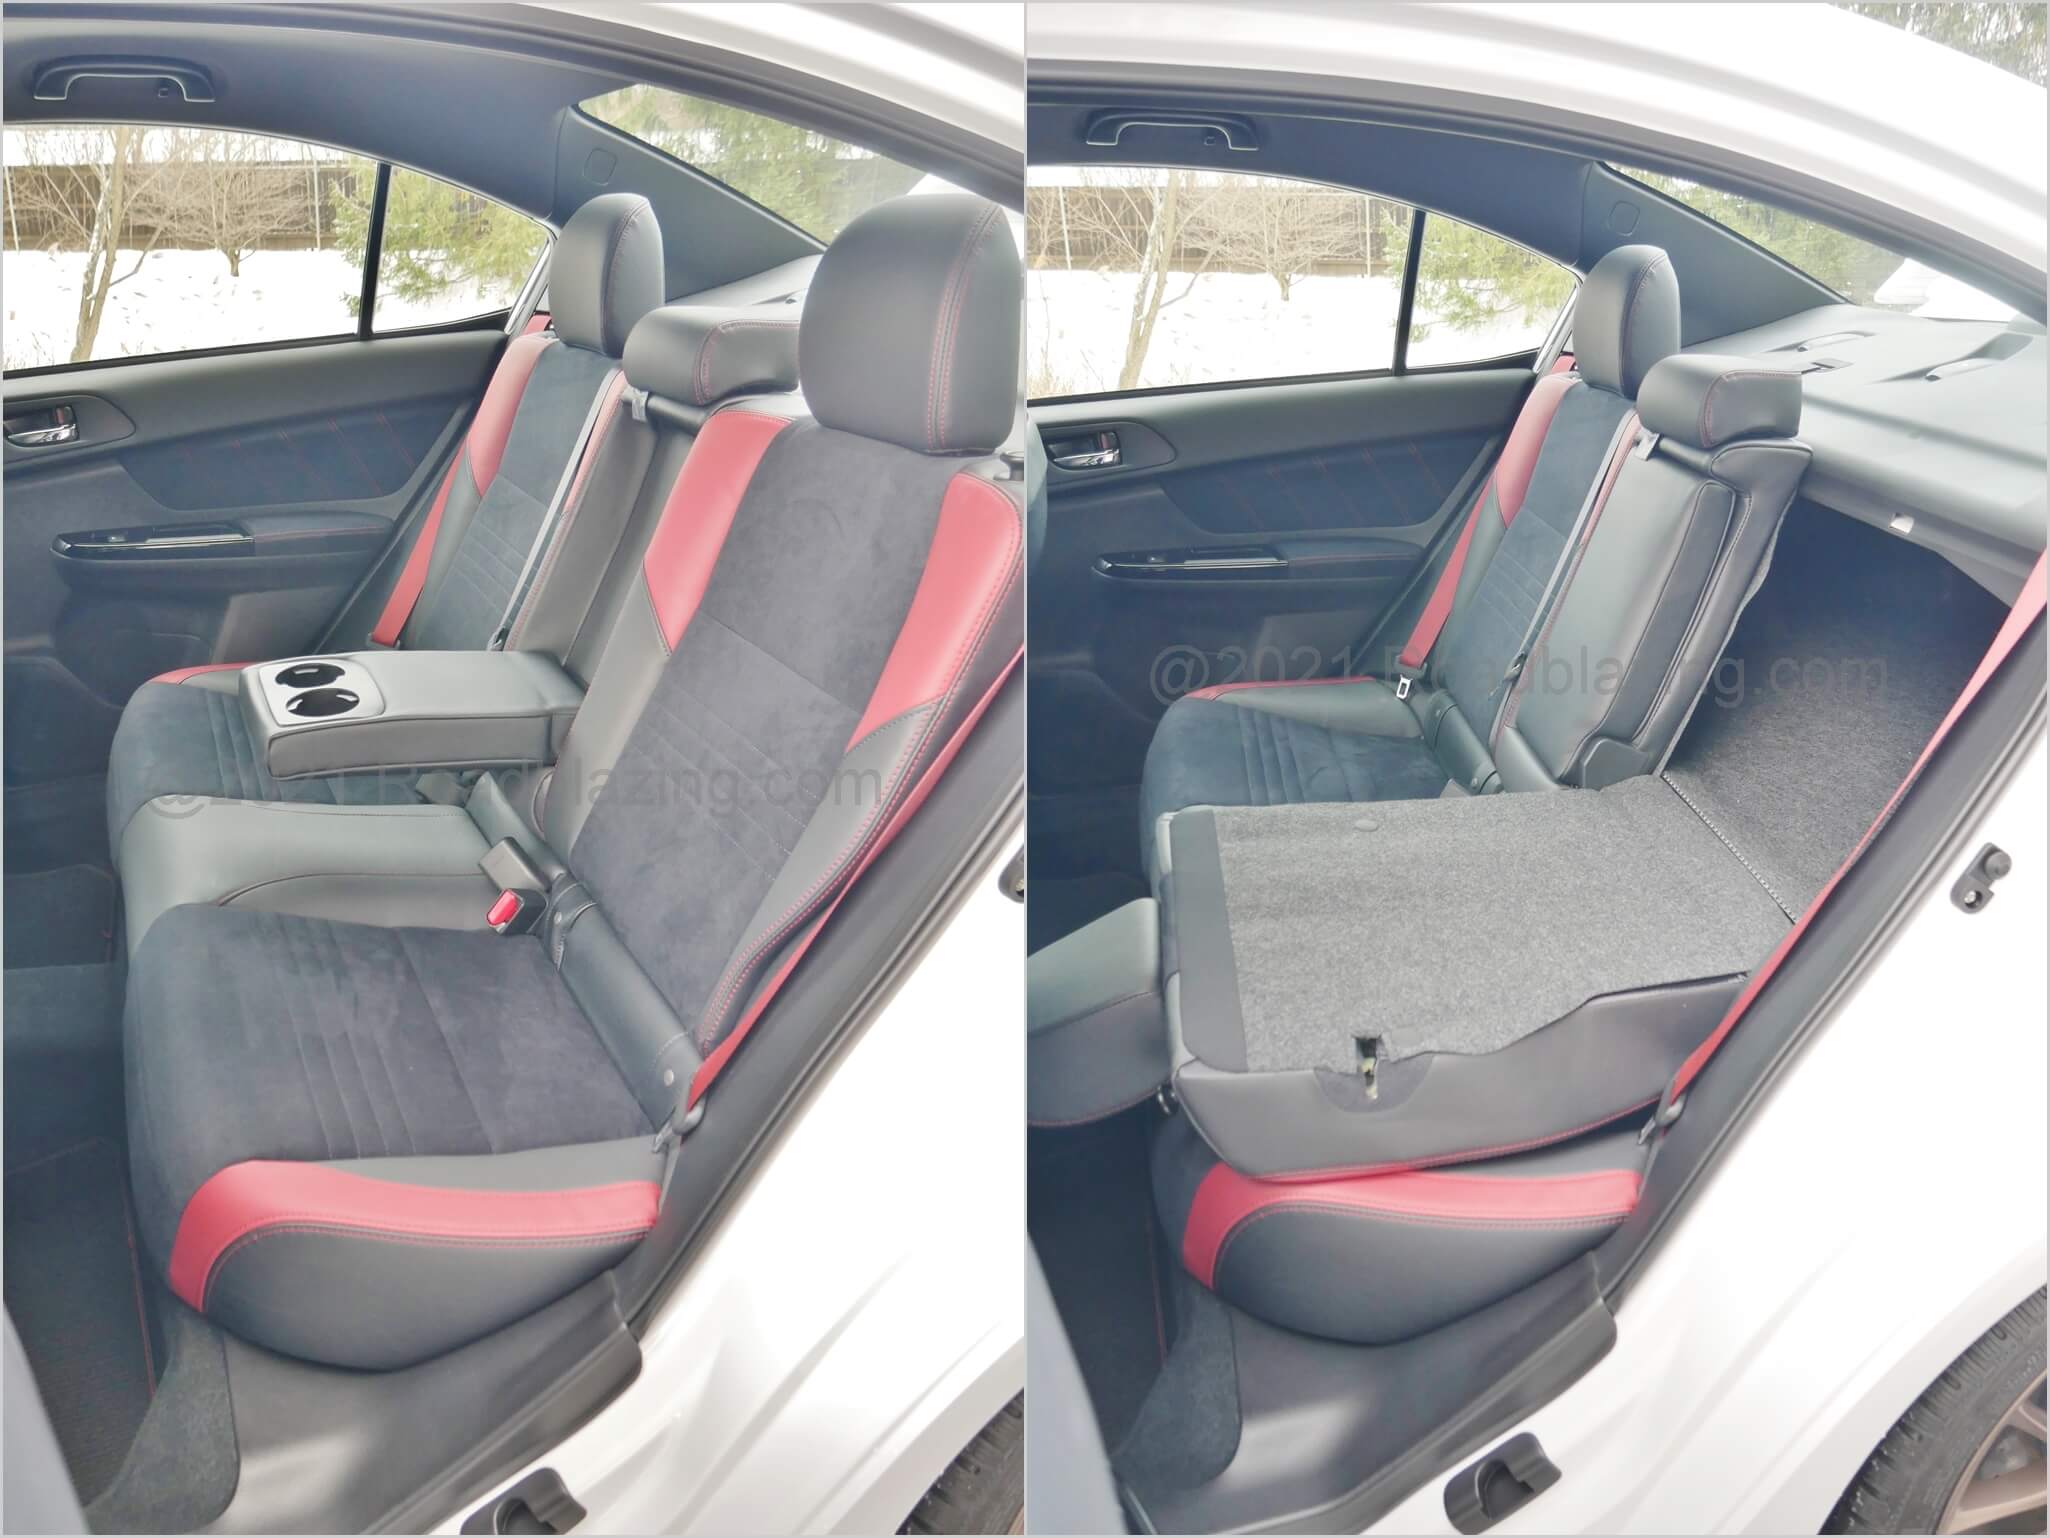 2020 Subaru WRX STI: Previous generation Impreza cabin space and comfort